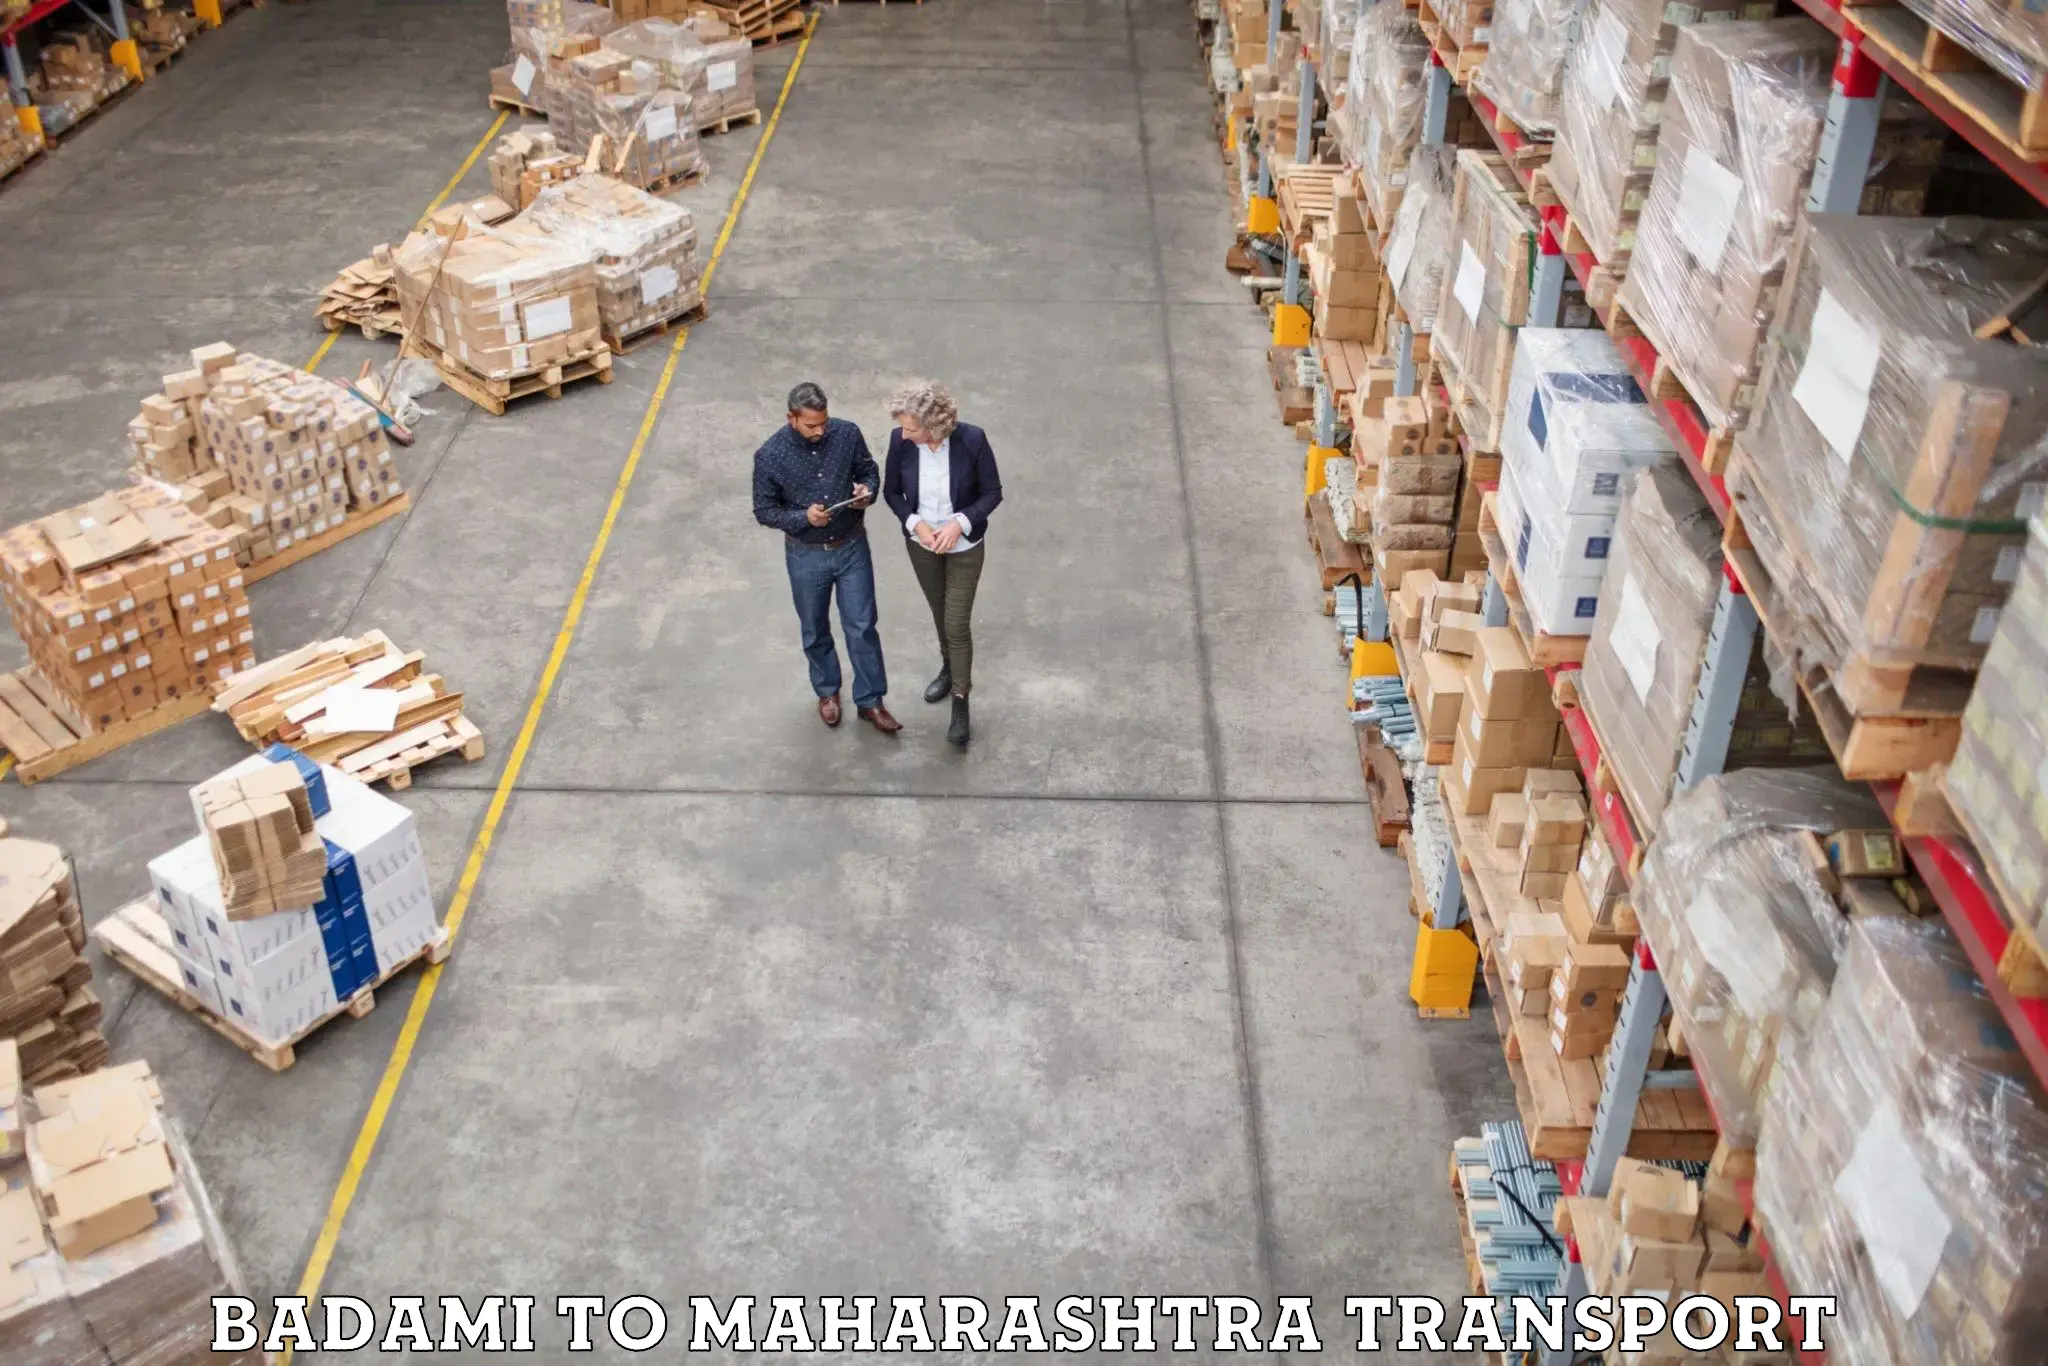 Lorry transport service Badami to Maharashtra